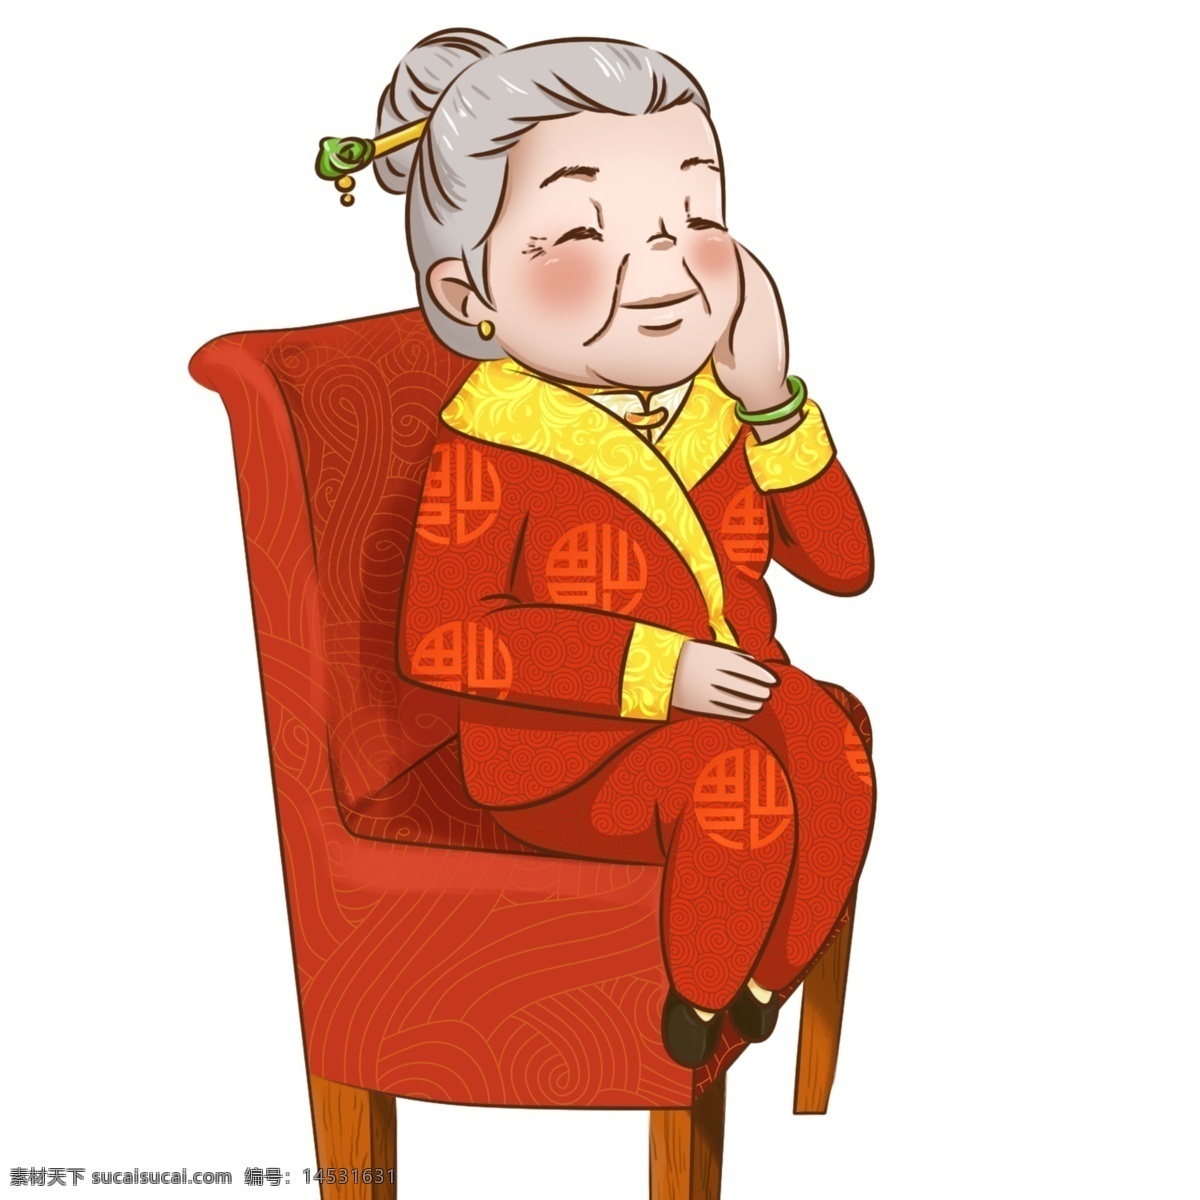 卡通 新年 唐装 人物 微笑 奶奶 手绘 年夜饭 红火 喜庆 美食 开心 狗年 中国风 福 红 发簪 温柔 婆婆 外婆 老人